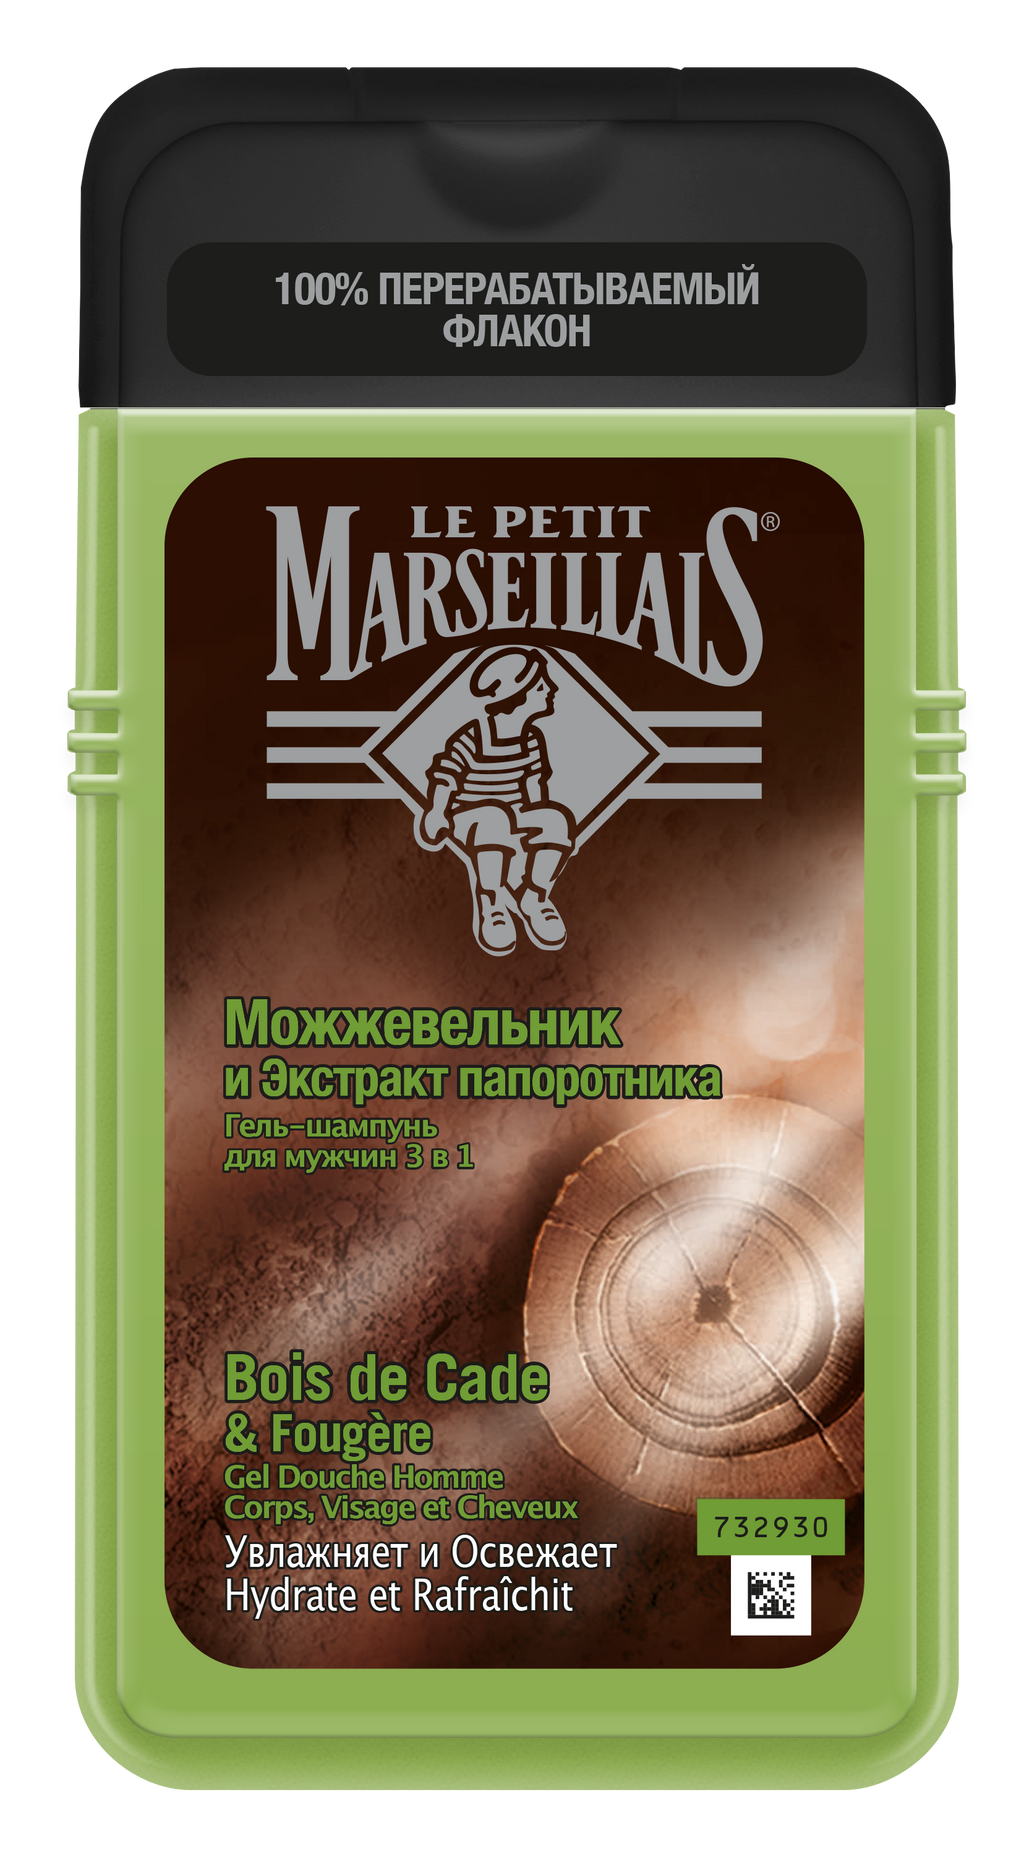 фото упаковки Le Petit Marseillais Гель-Шампунь Можжевельник и Экстракт папоротника 3в1